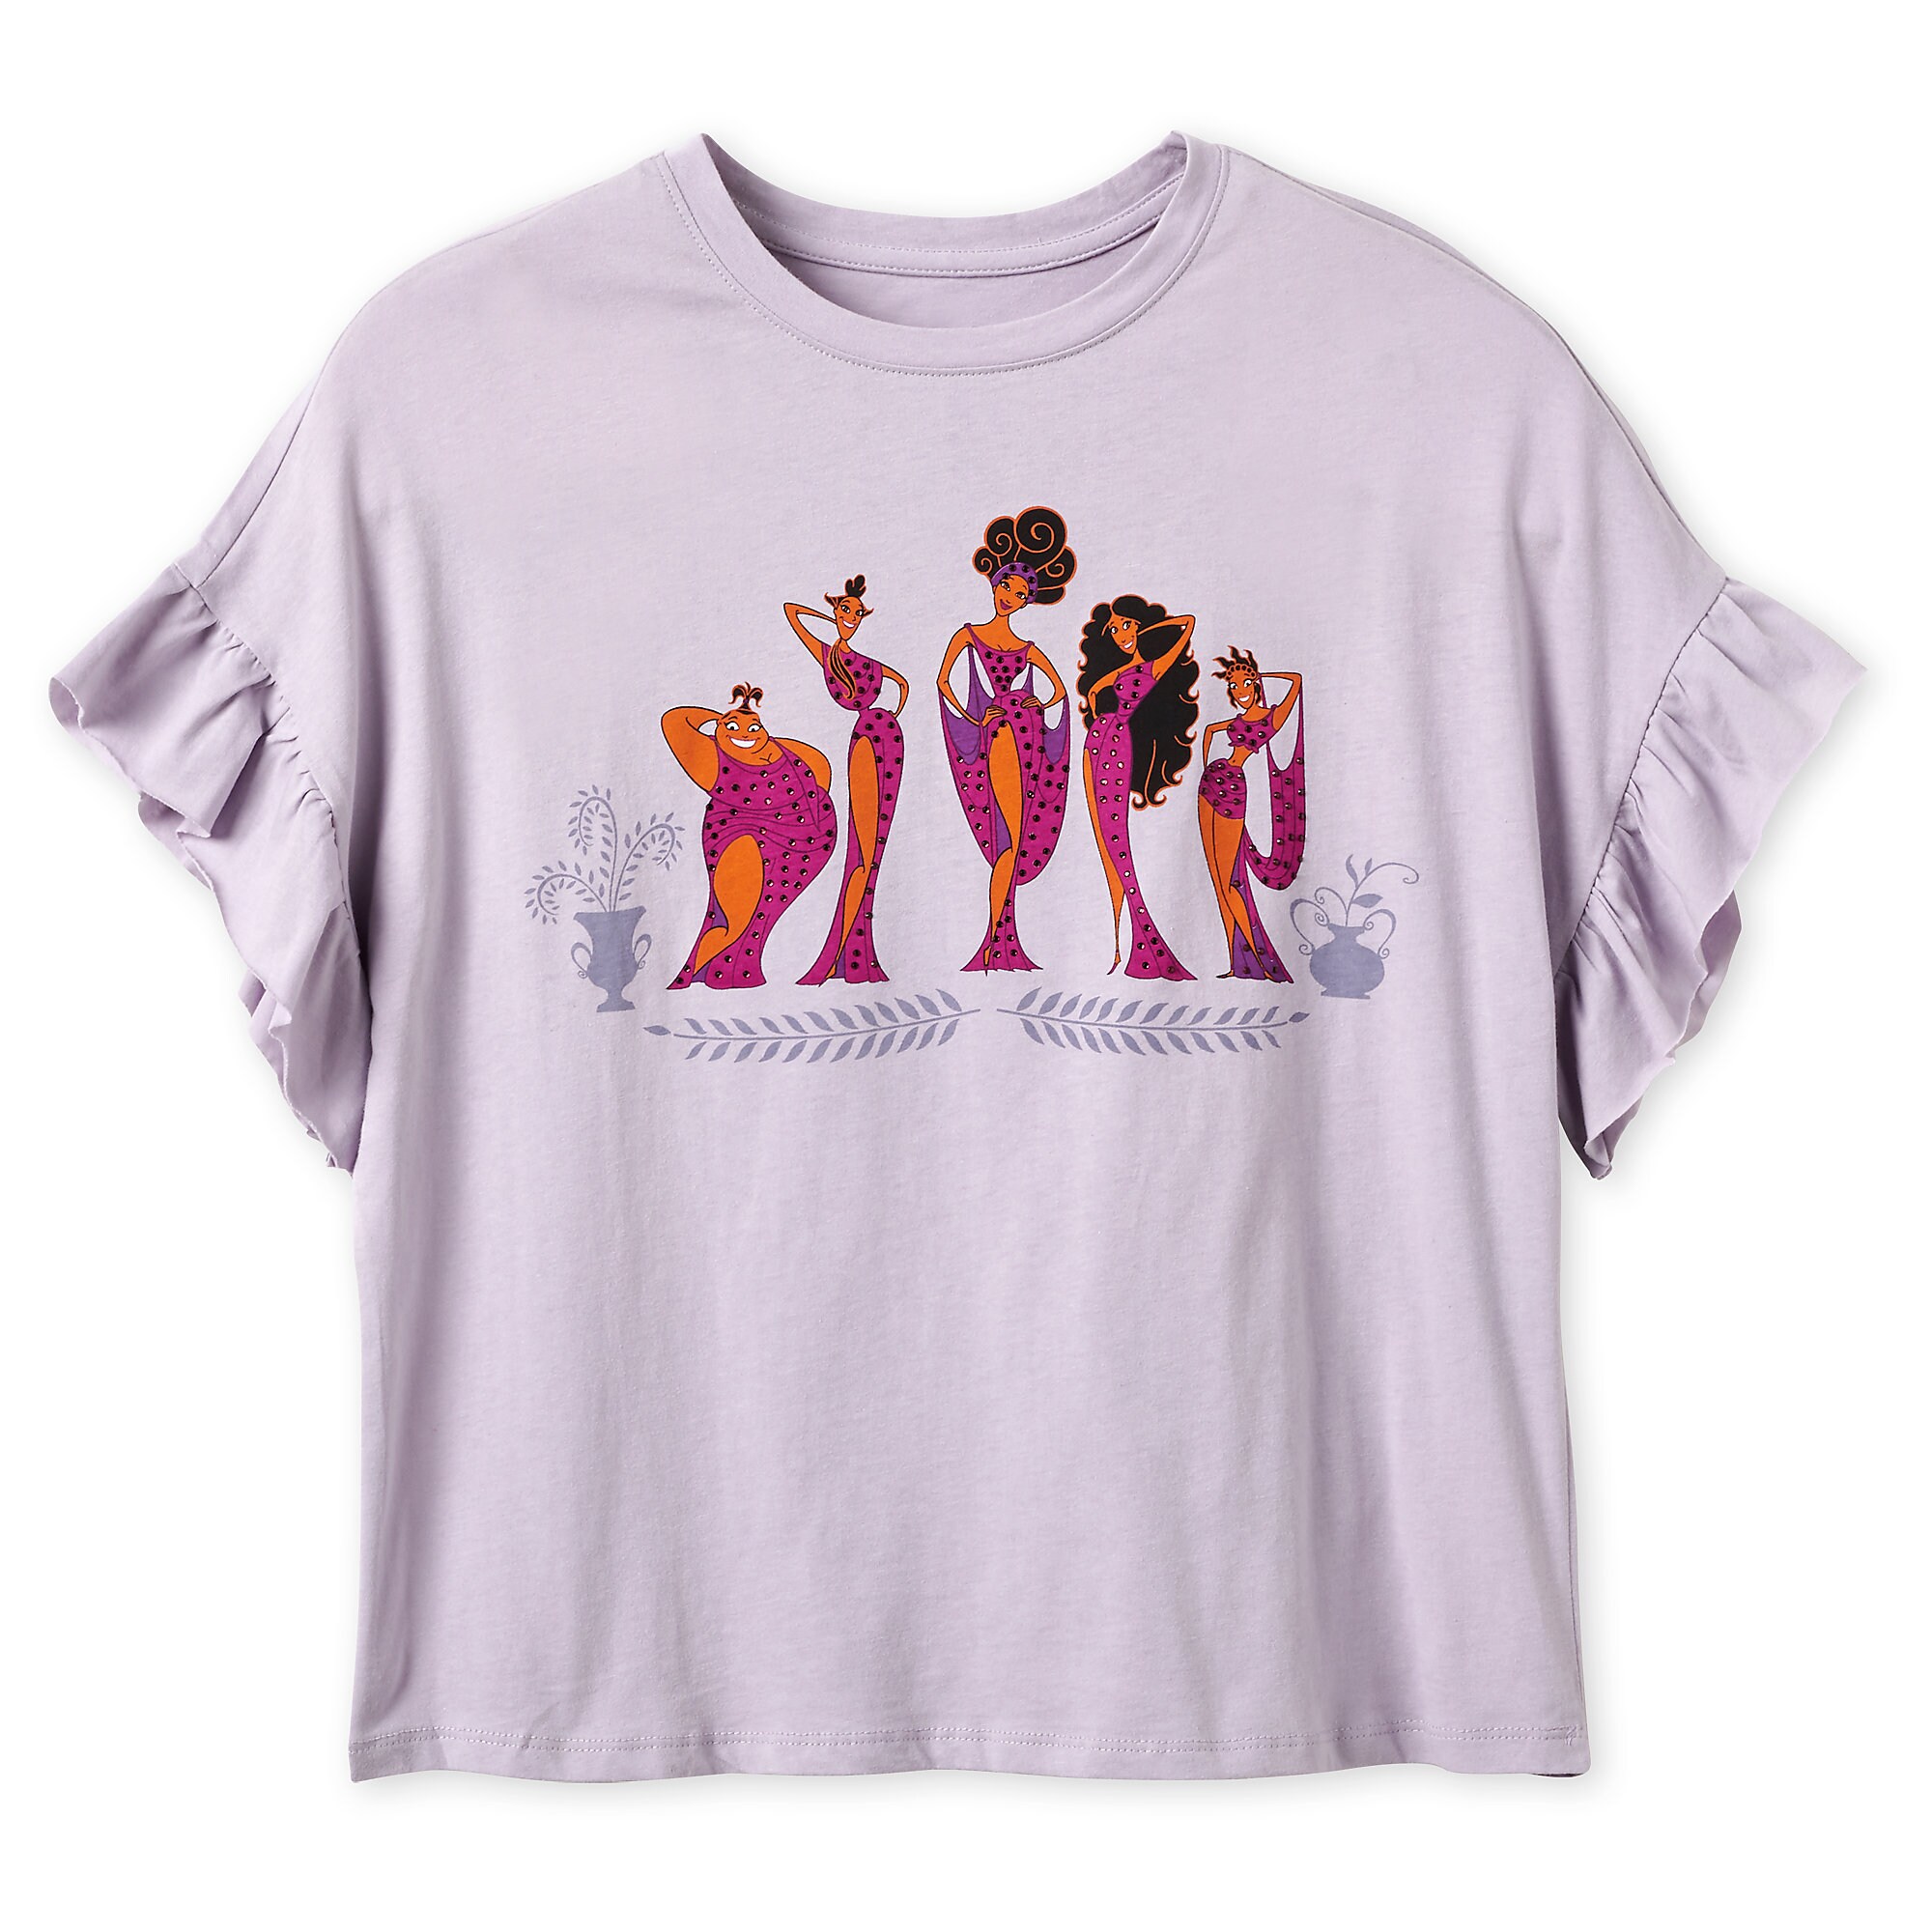 Muses Fashion T-Shirt for Women - Hercules